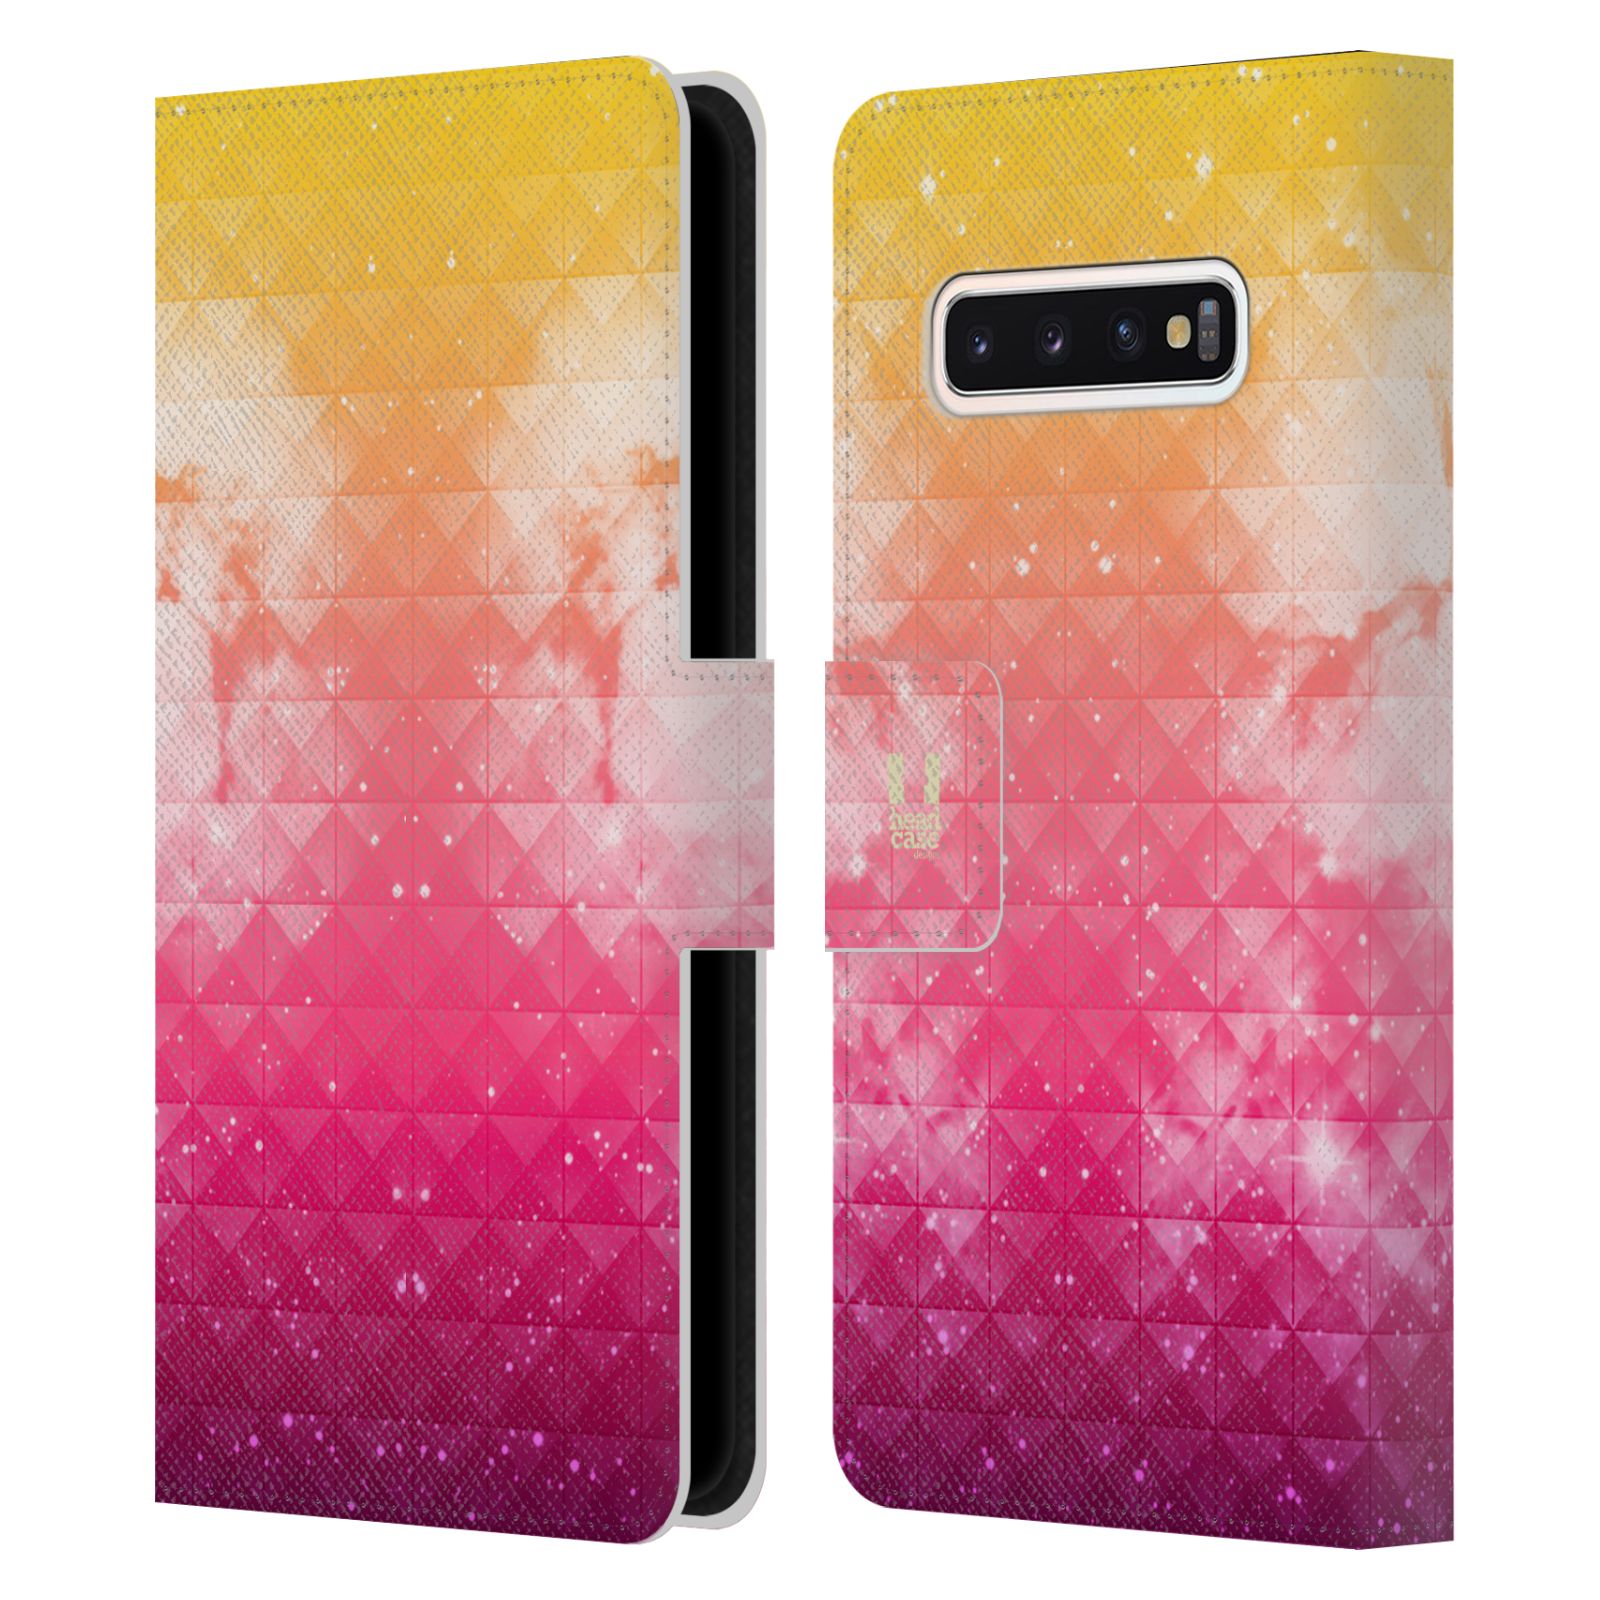 Pouzdro HEAD CASE na mobil Samsung Galaxy S10 barevná vesmírná mlhovina oranžová a růžová